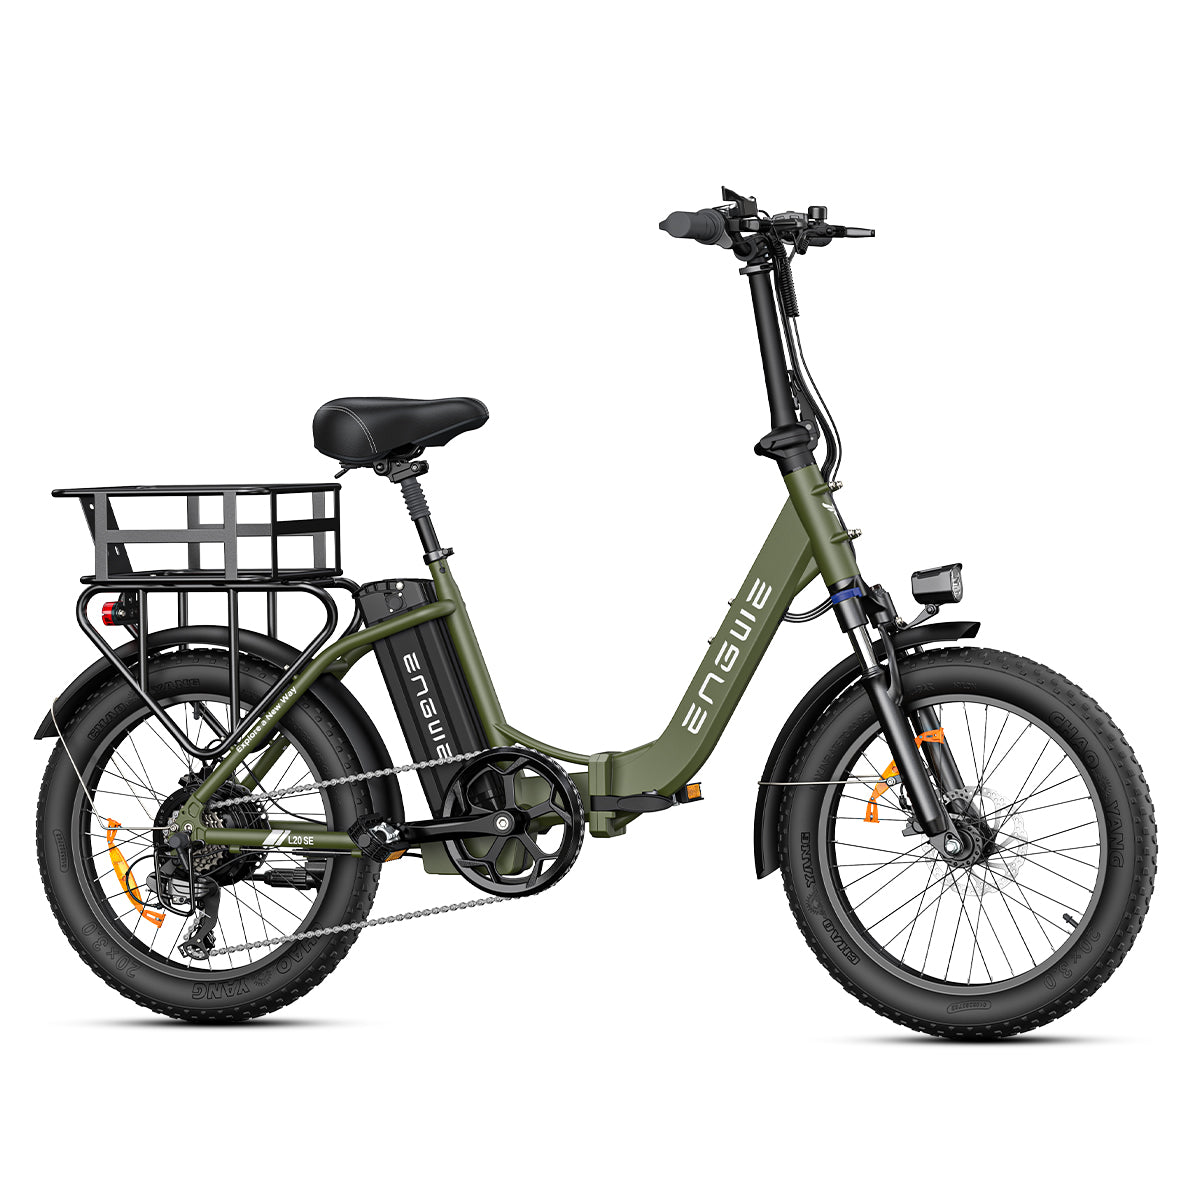 Engwe L20 SE 20" 250W Vélo électrique VTC Pliable 15.6Ah Batterie E-bike avec Cadre Ouvert